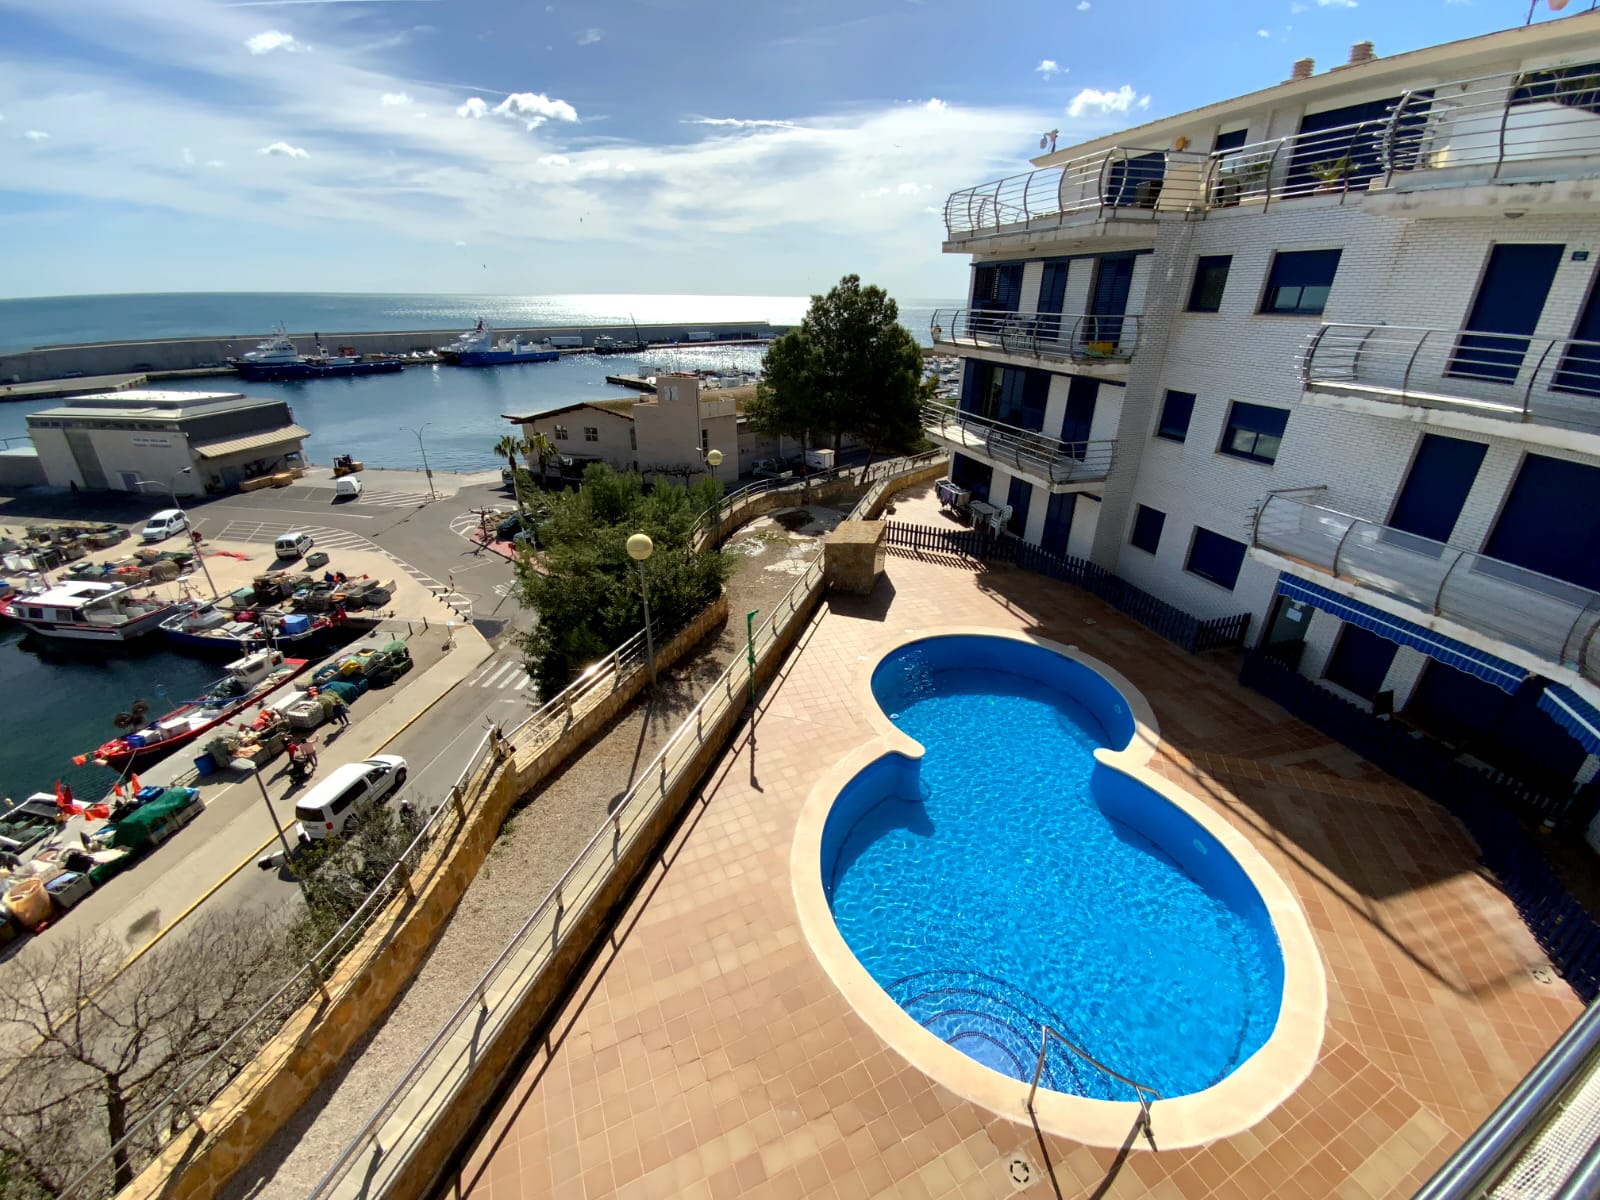 Precioso y amplio ático (dúplex) de 370 m2 con terraza grande, céntrico, con vistas maravillosas al mar y al puerto